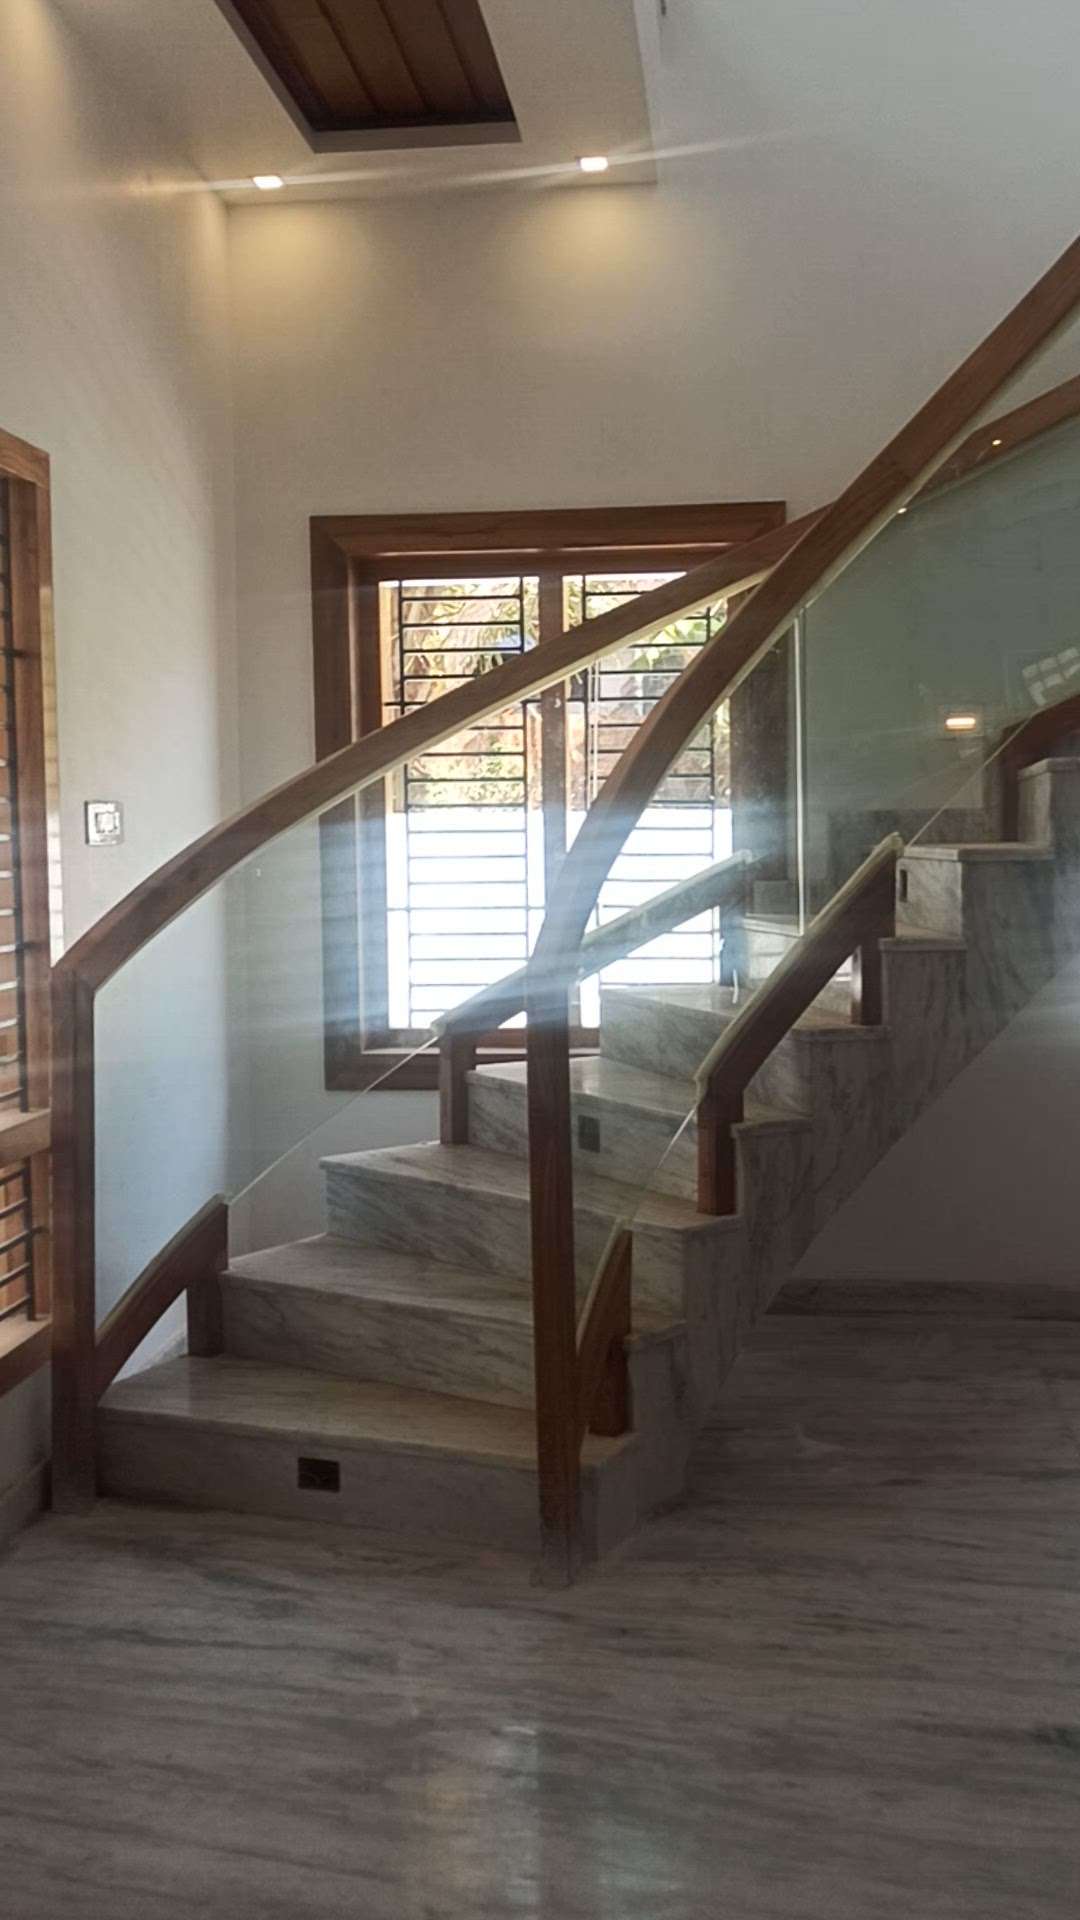 wooden glass handrails work... #
spiral handrails work..